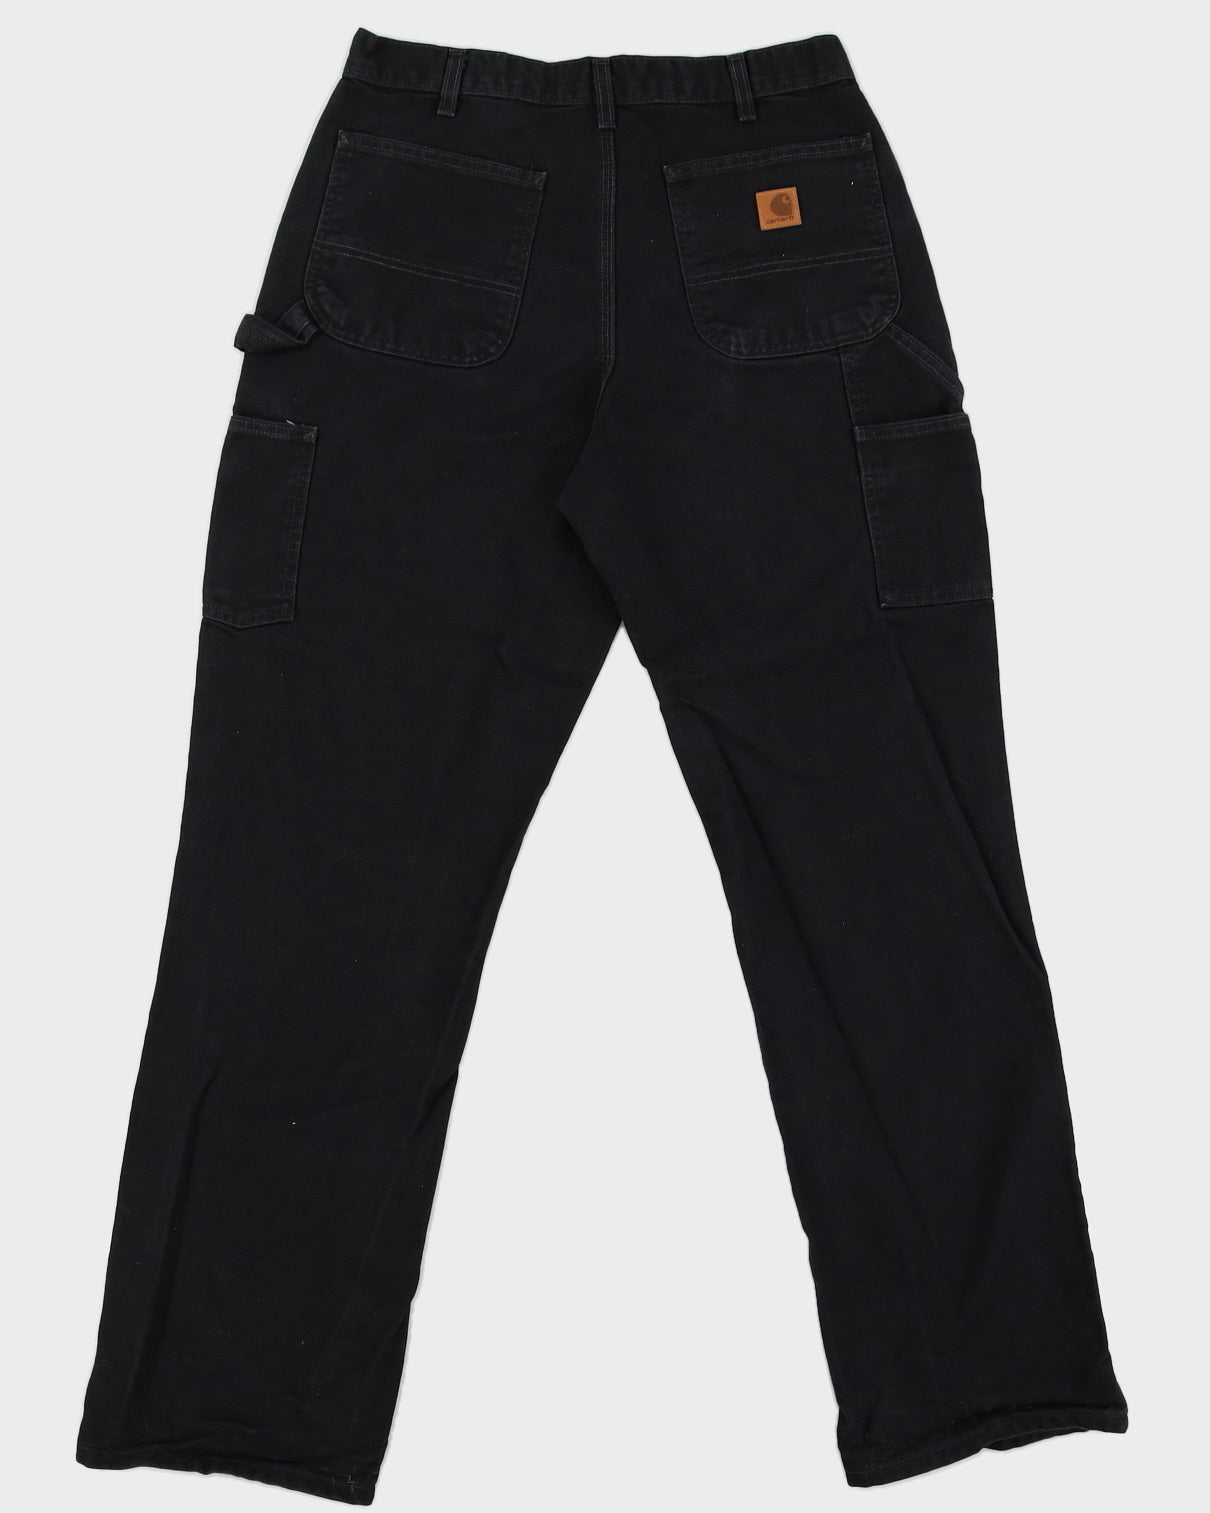 00s Carhartt Black Trousers - W33 L34